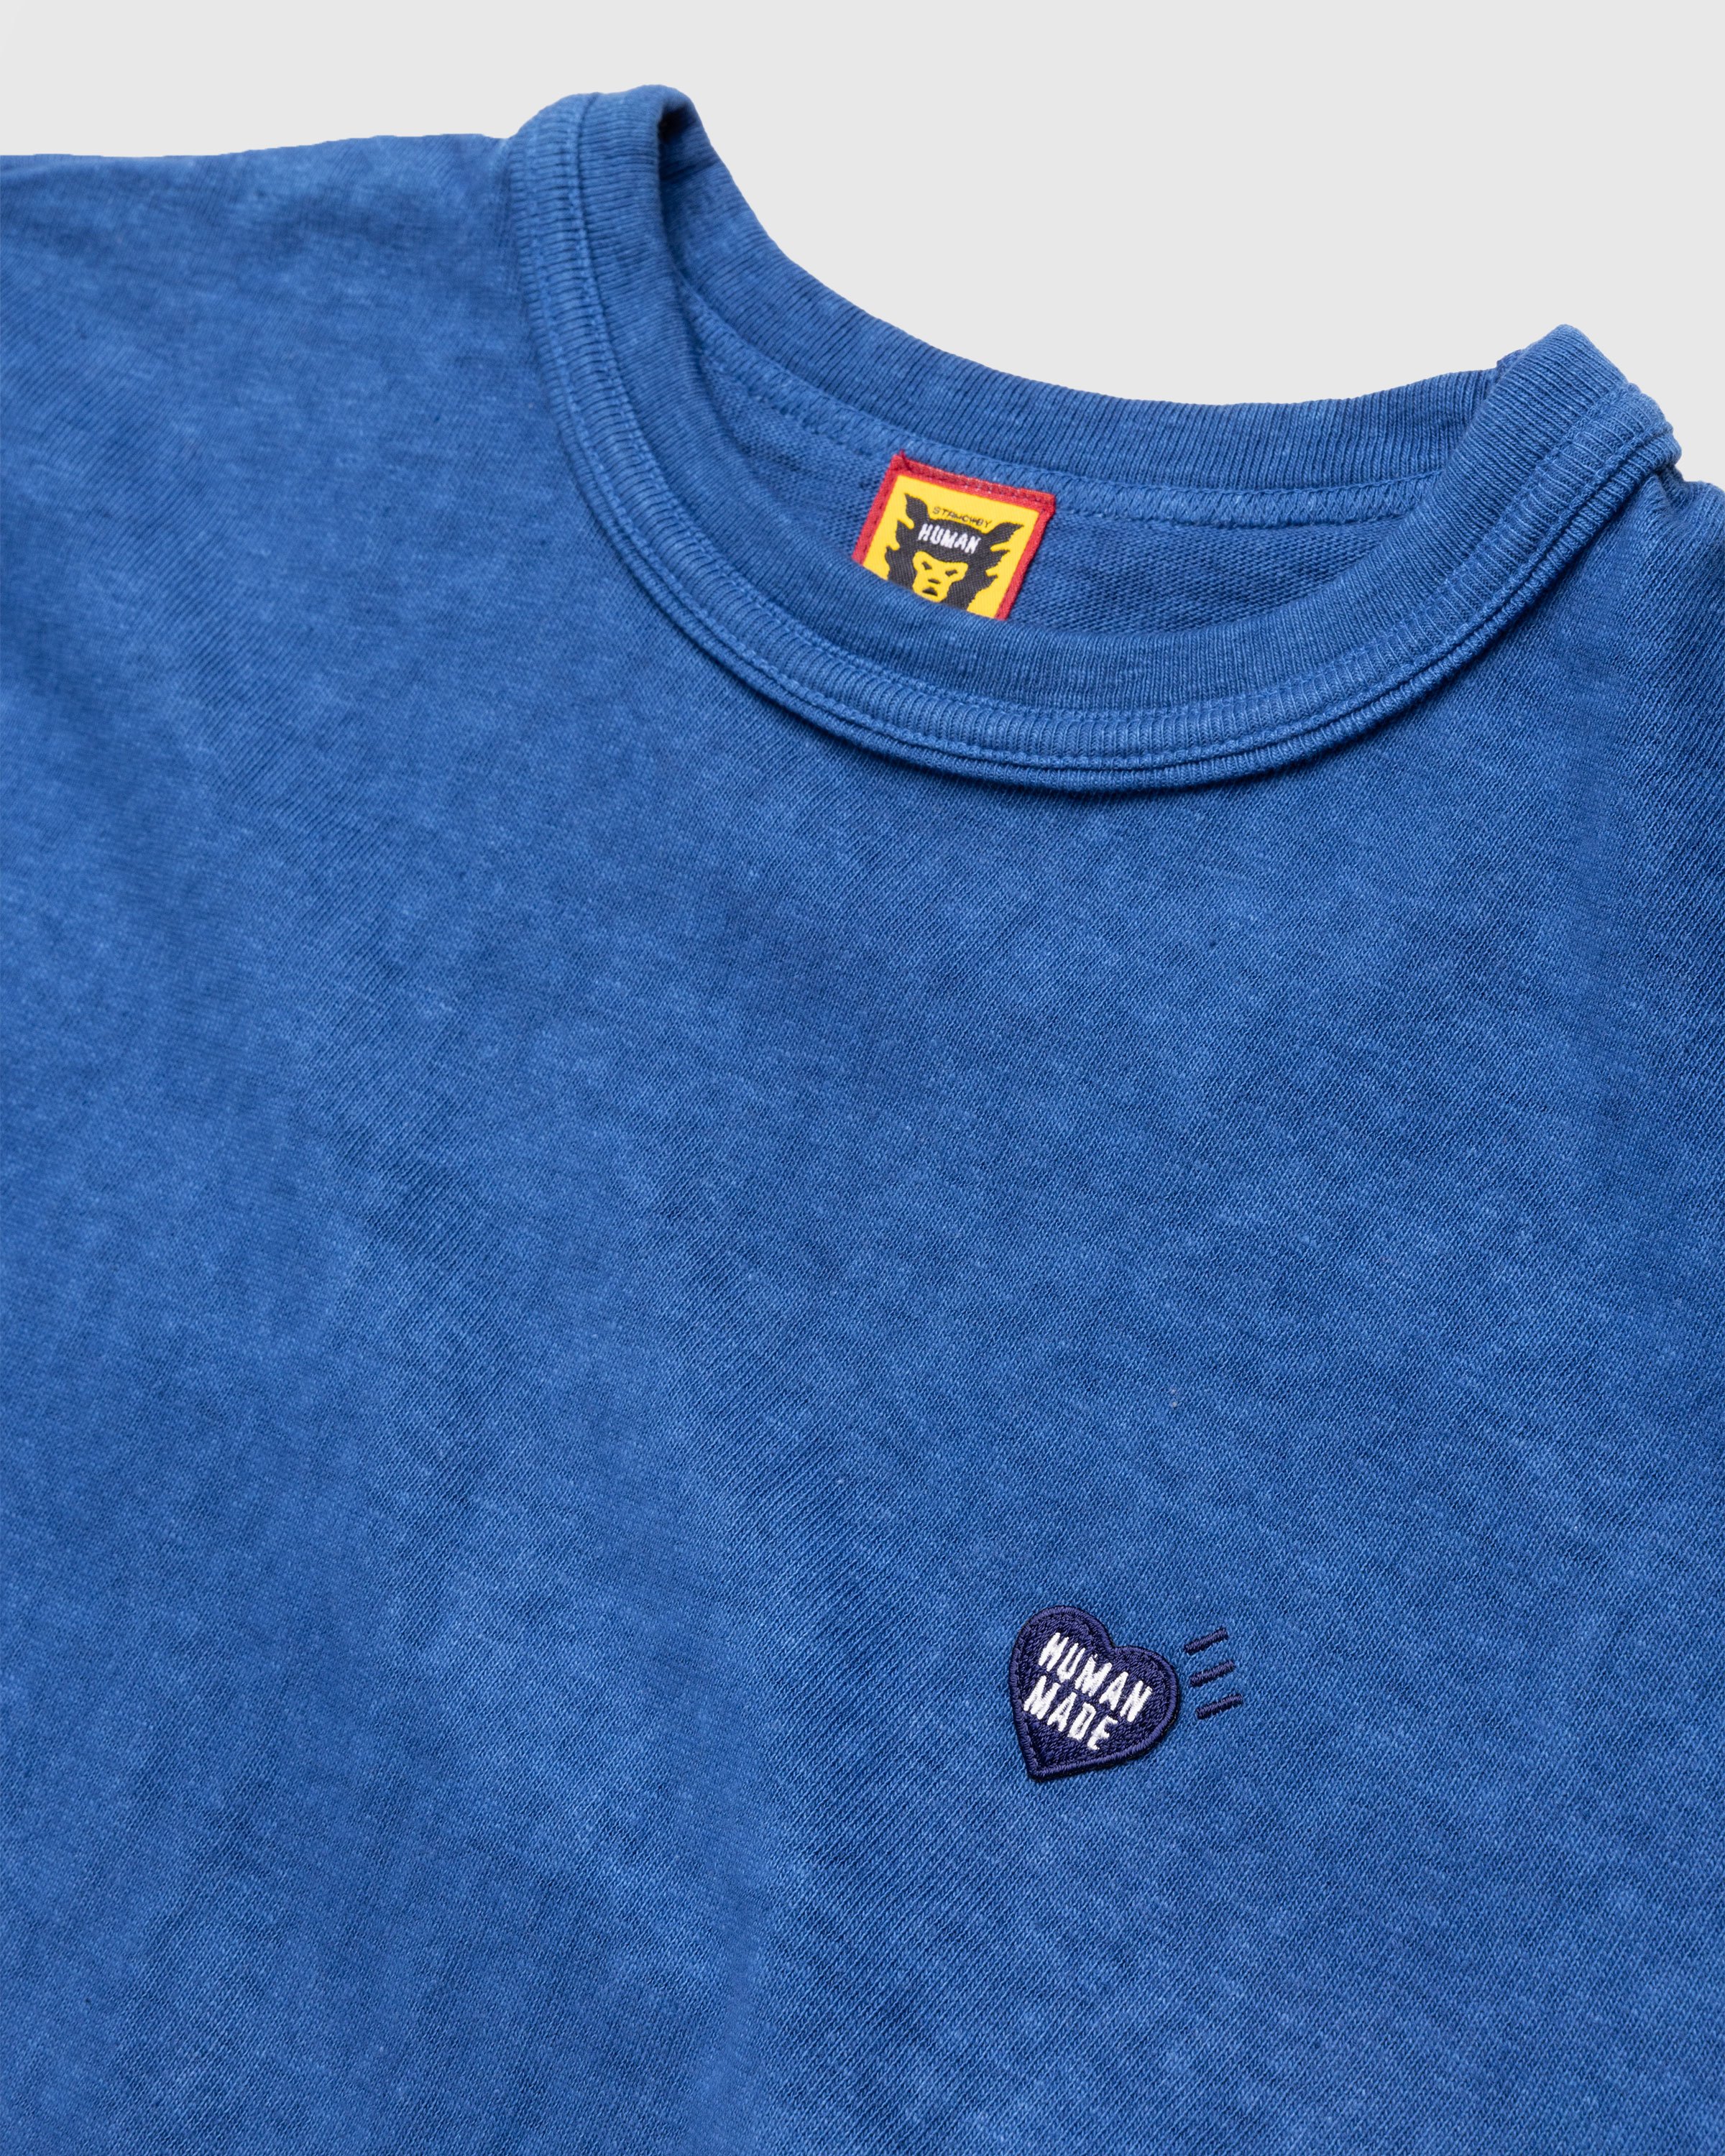 Human Made - Ningen-sei Indigo Dyed T-Shirt #2 Blue - Clothing - Blue - Image 5